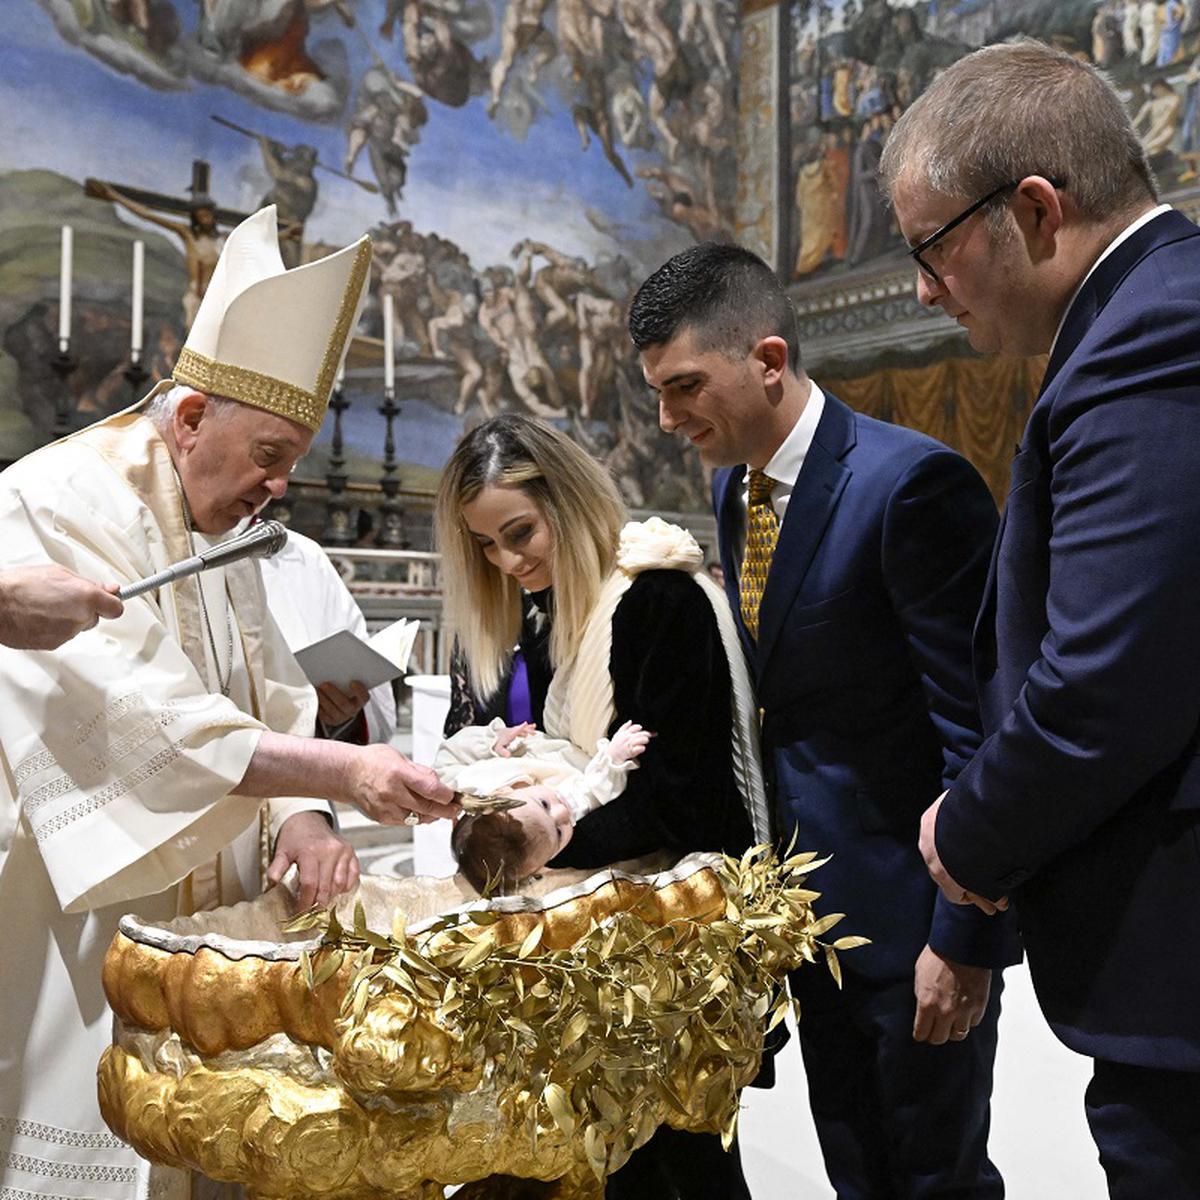 Ciudad del Vaticano  Papa Francisco bautizó a decenas de niños y